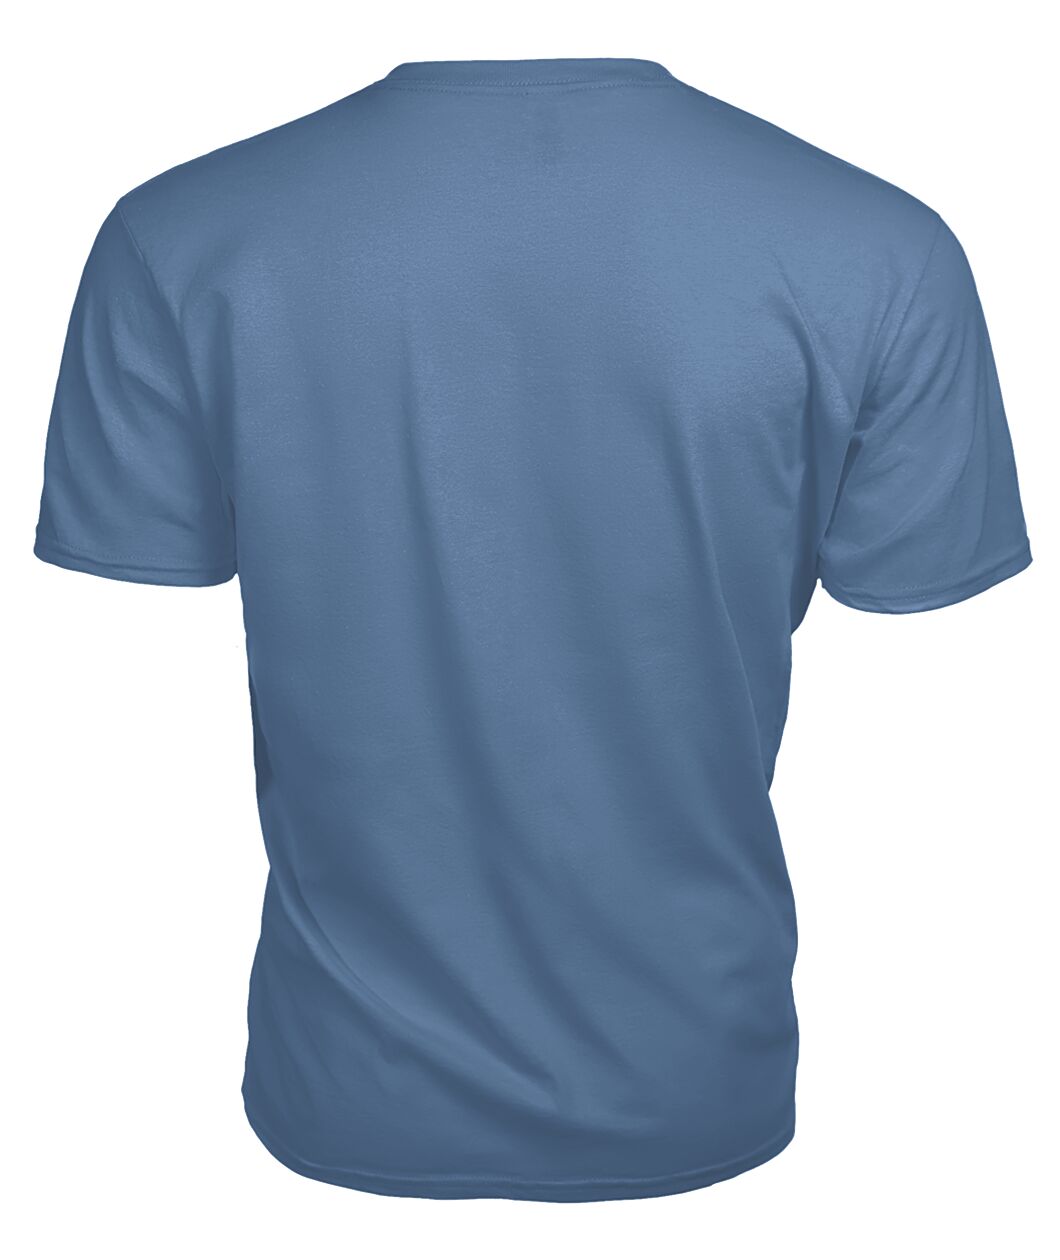 Stanton Tartan 2D T-Shirt